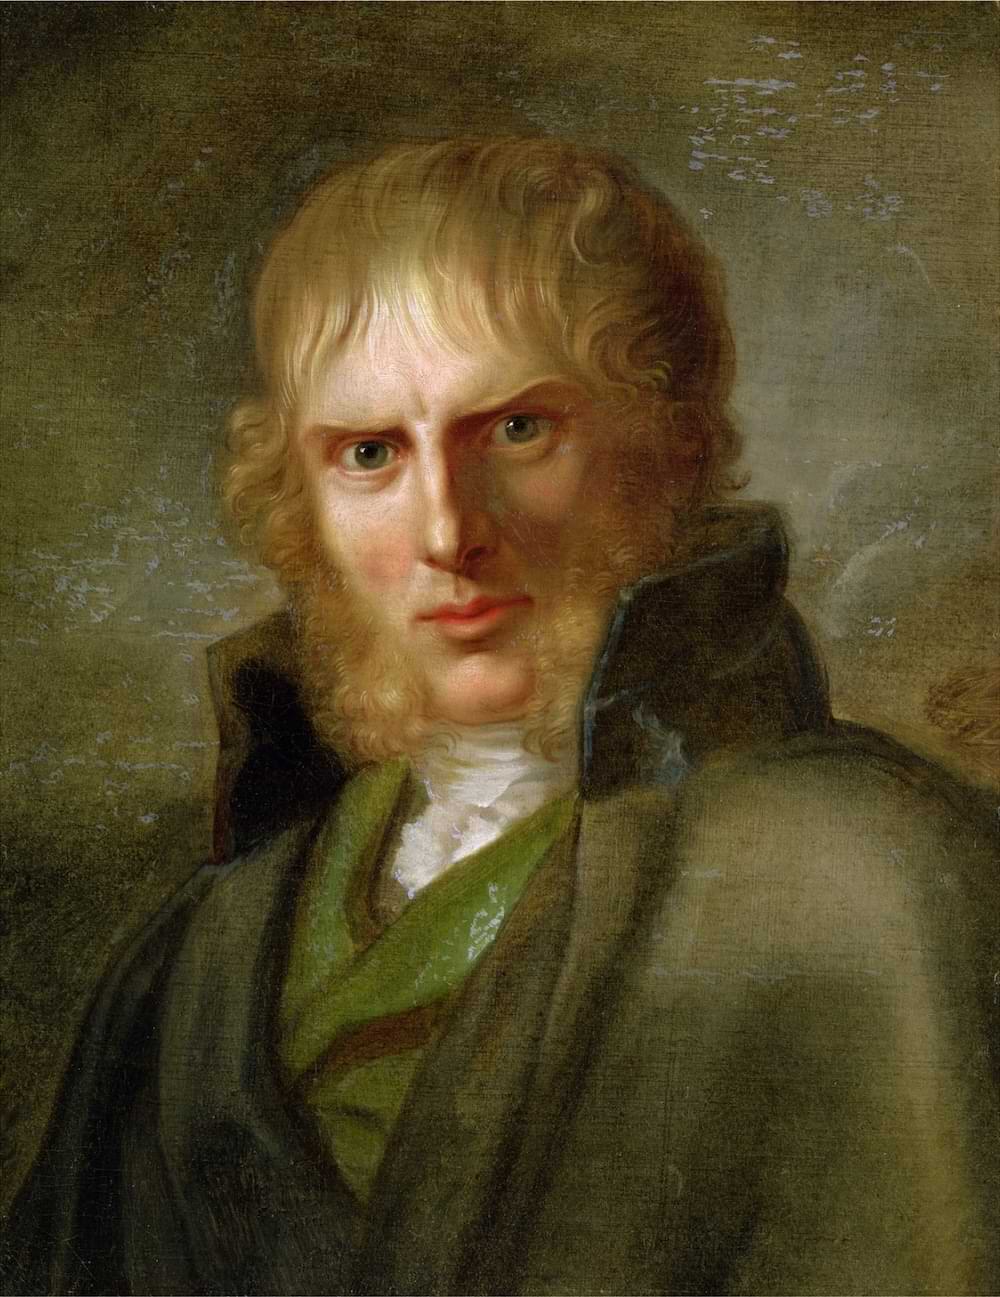 Caspar David Friedrich by Gerhard von Kügelgen, c. 1808